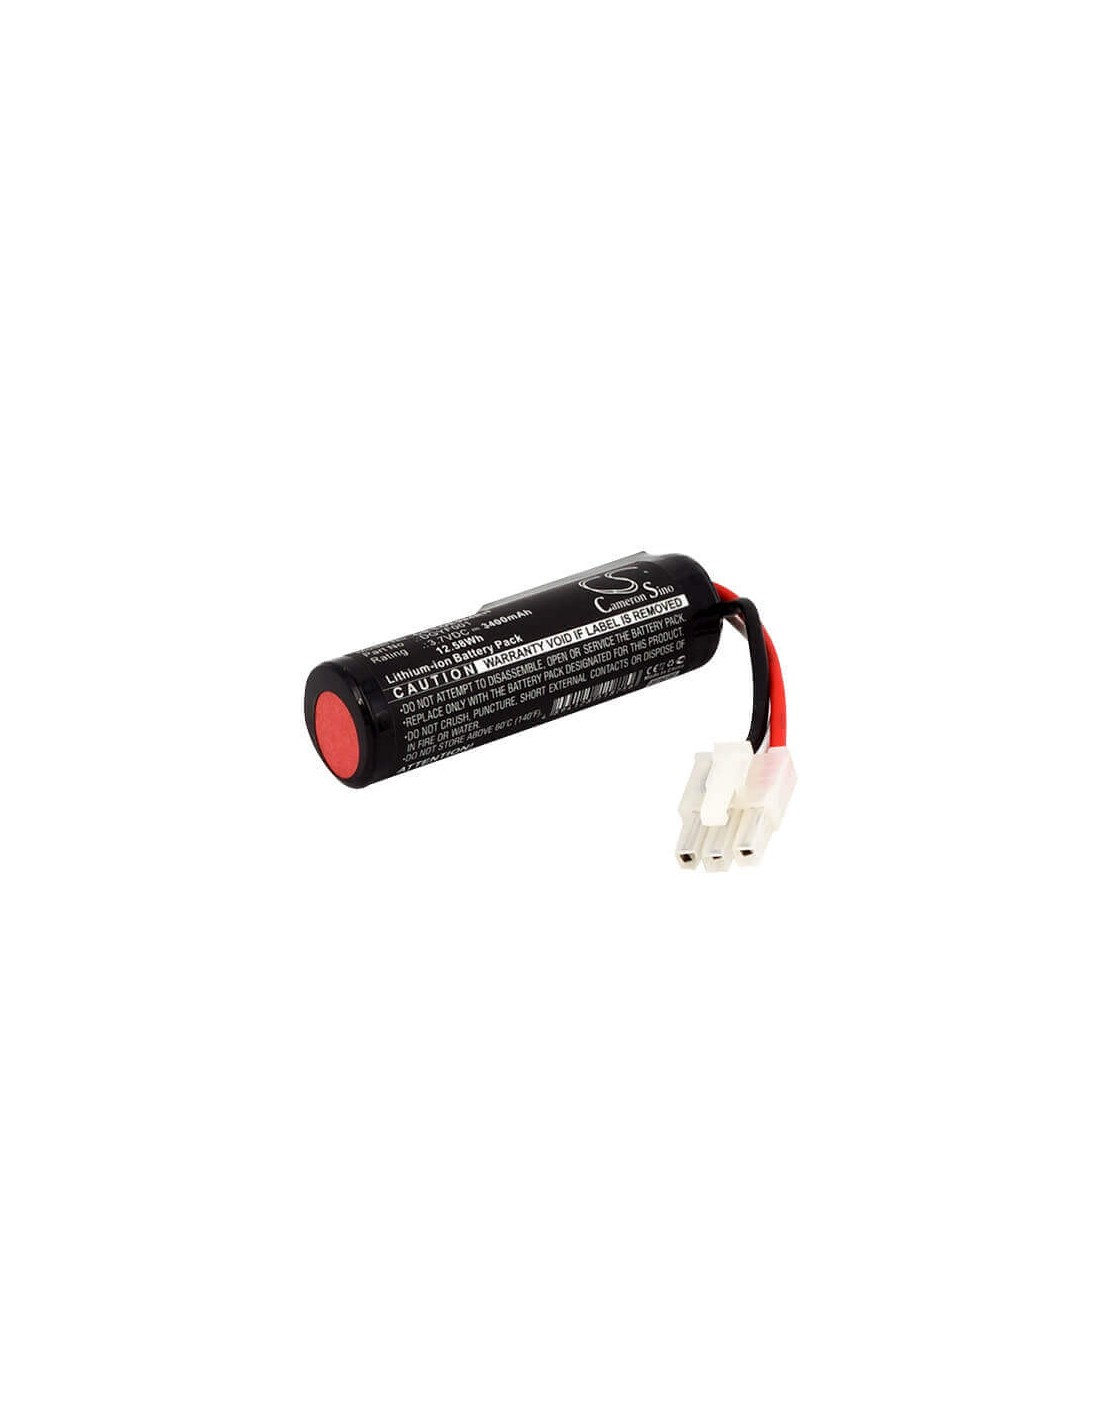 Super Extended Battery for Logitech,533-000104,533-000138 Ue Boombox 3.7V, 3400mAh - 12.58Wh